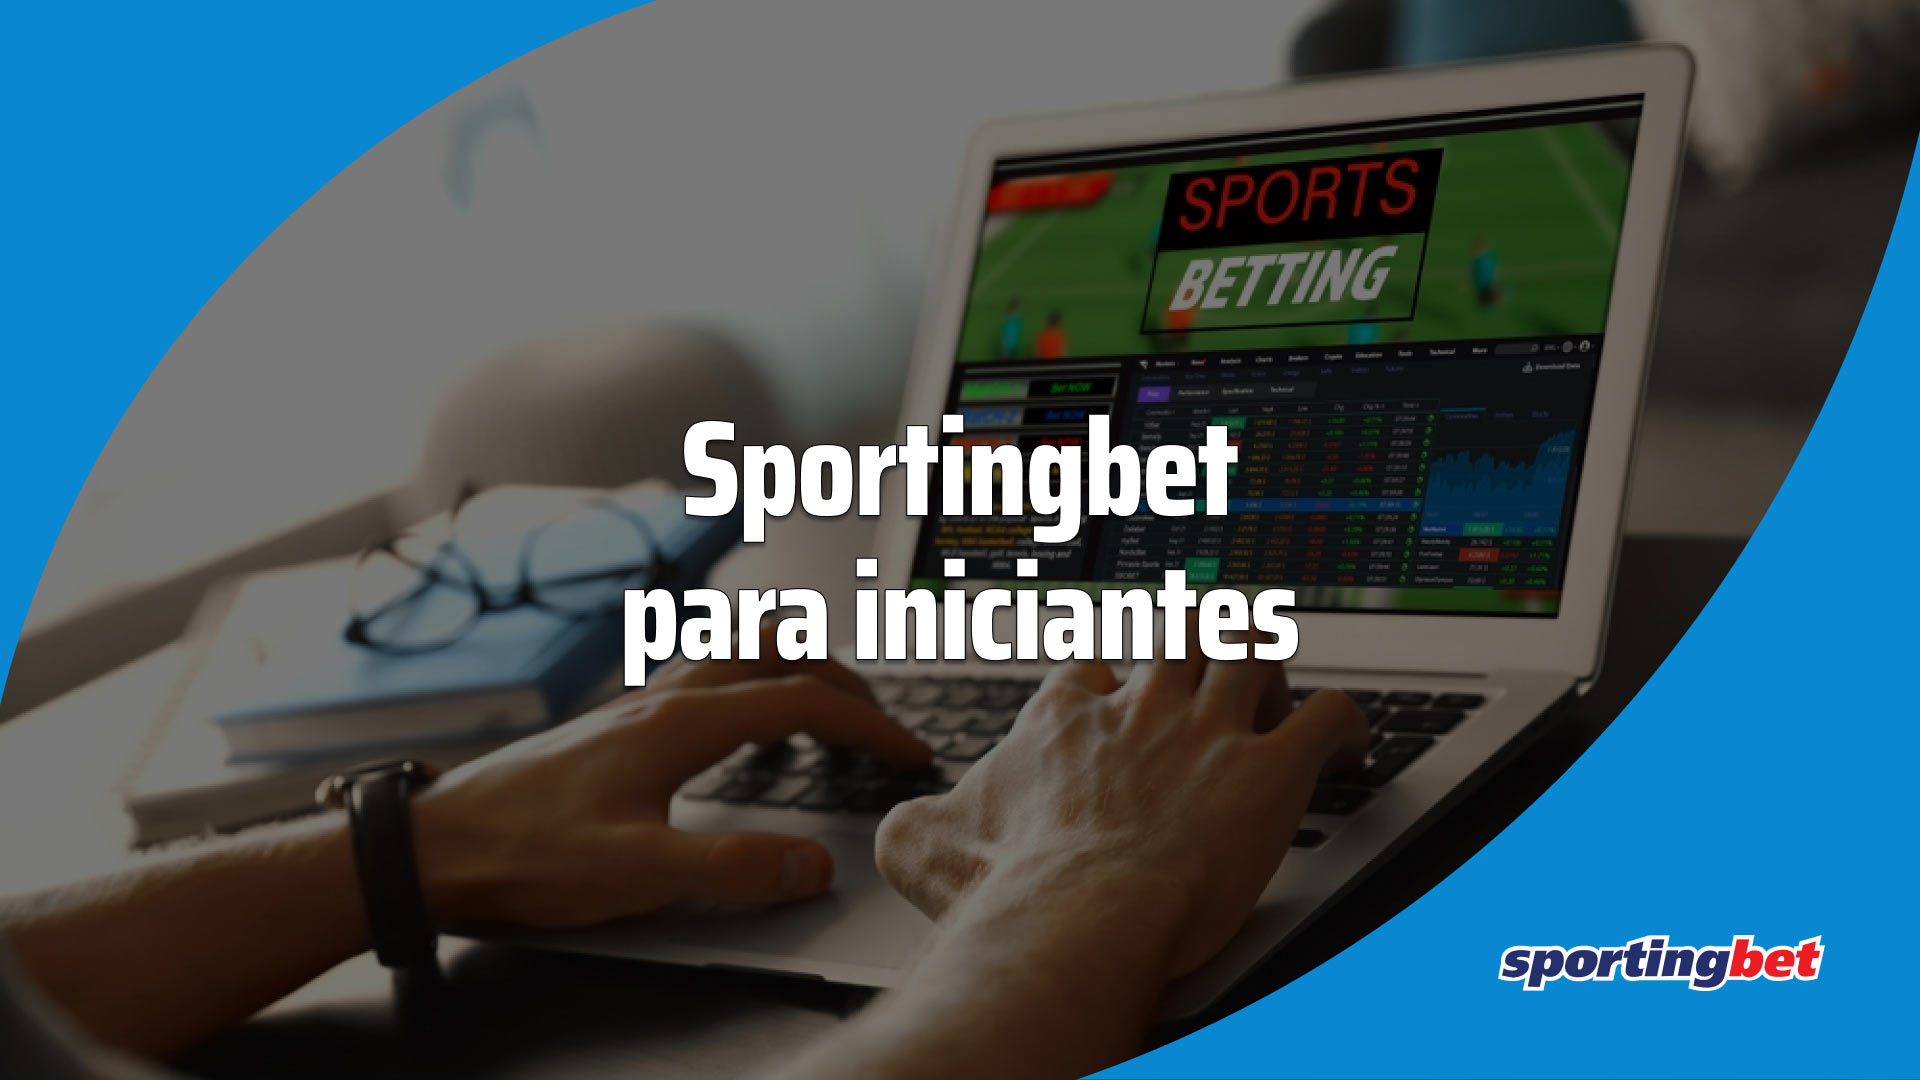 Como funciona o SportingBet? Guia completo com dicas sobre o site